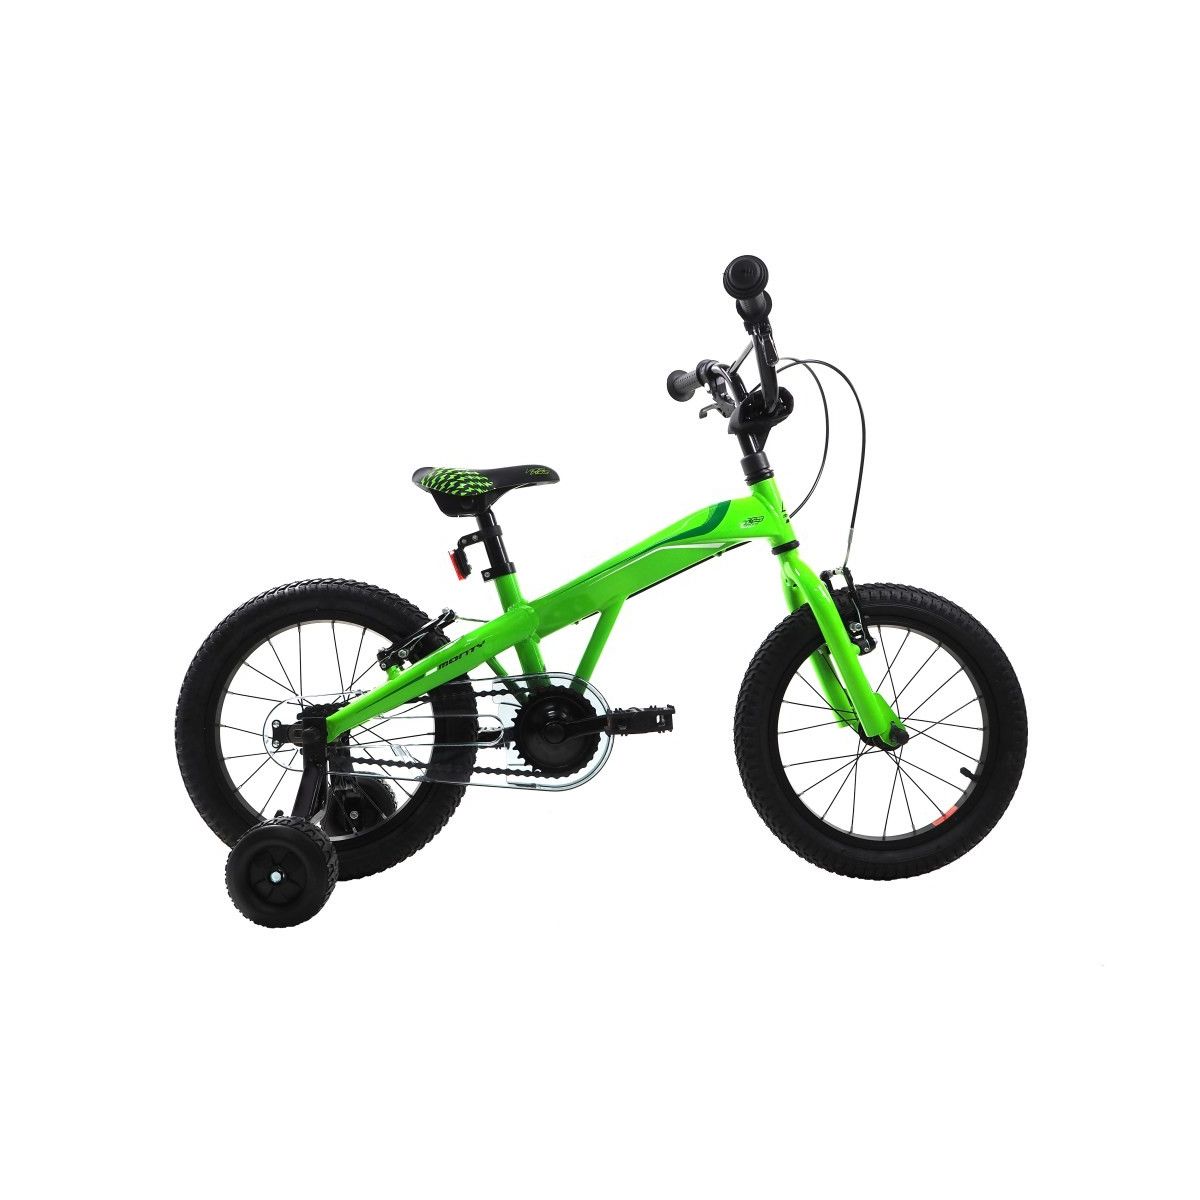 Bicicleta niño Monty 103 (3 a 5 años) 2018